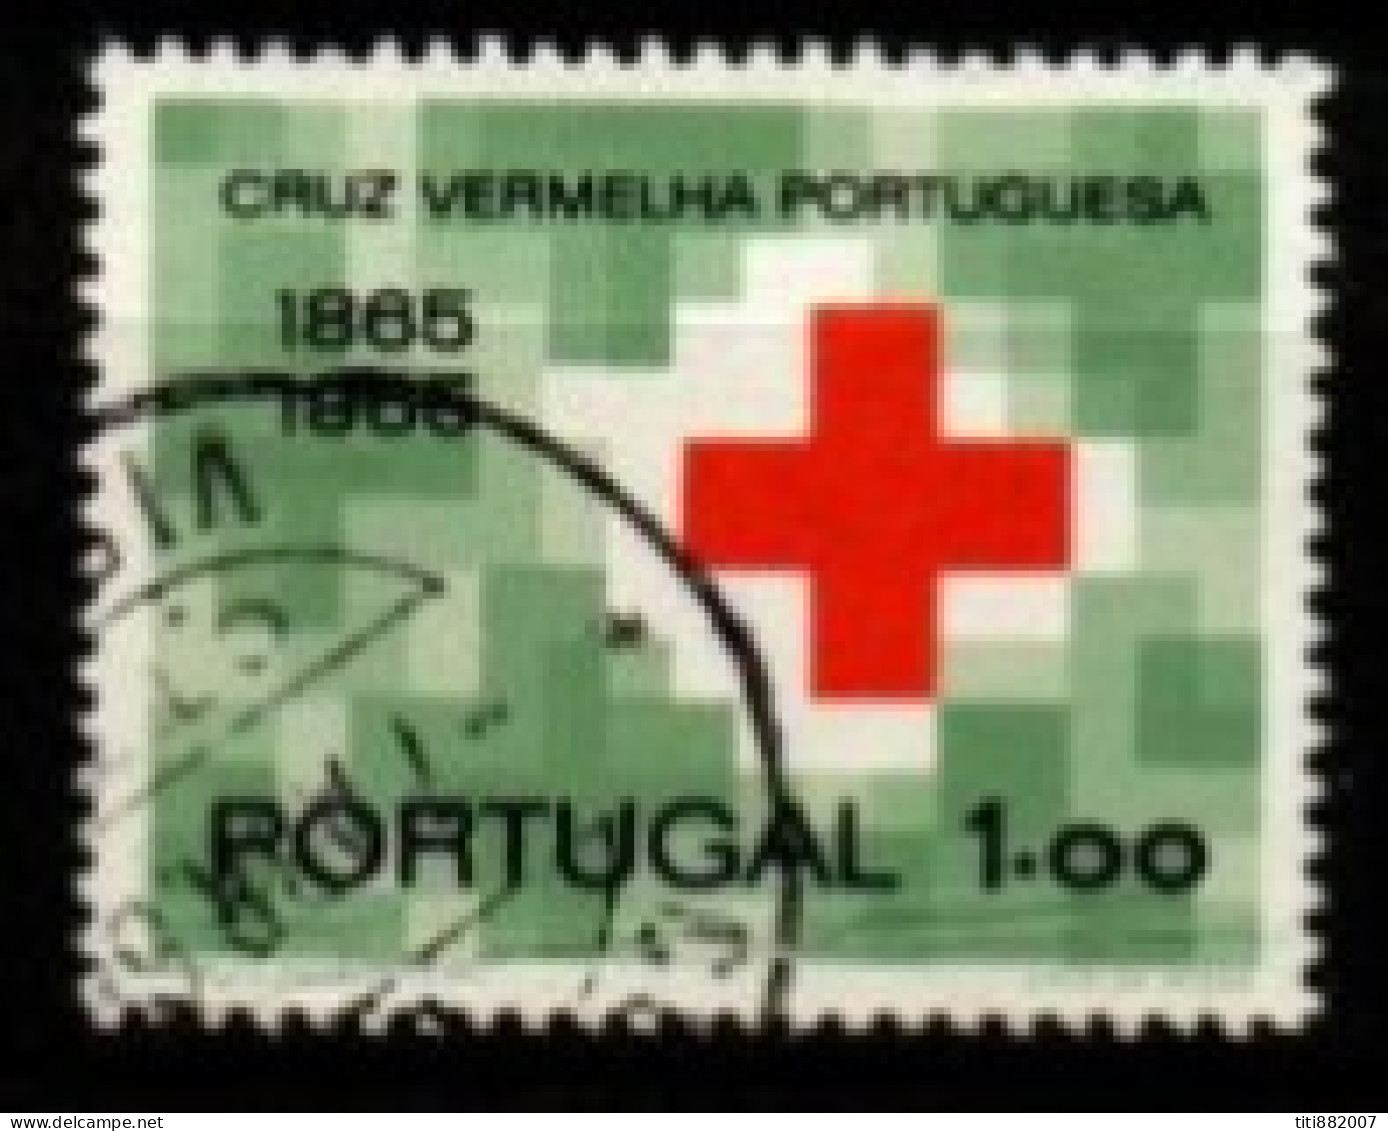 PORTUGAL  -   1965.  Y&T N° 968 Oblitéré.    Croix-Rouge. - Gebraucht